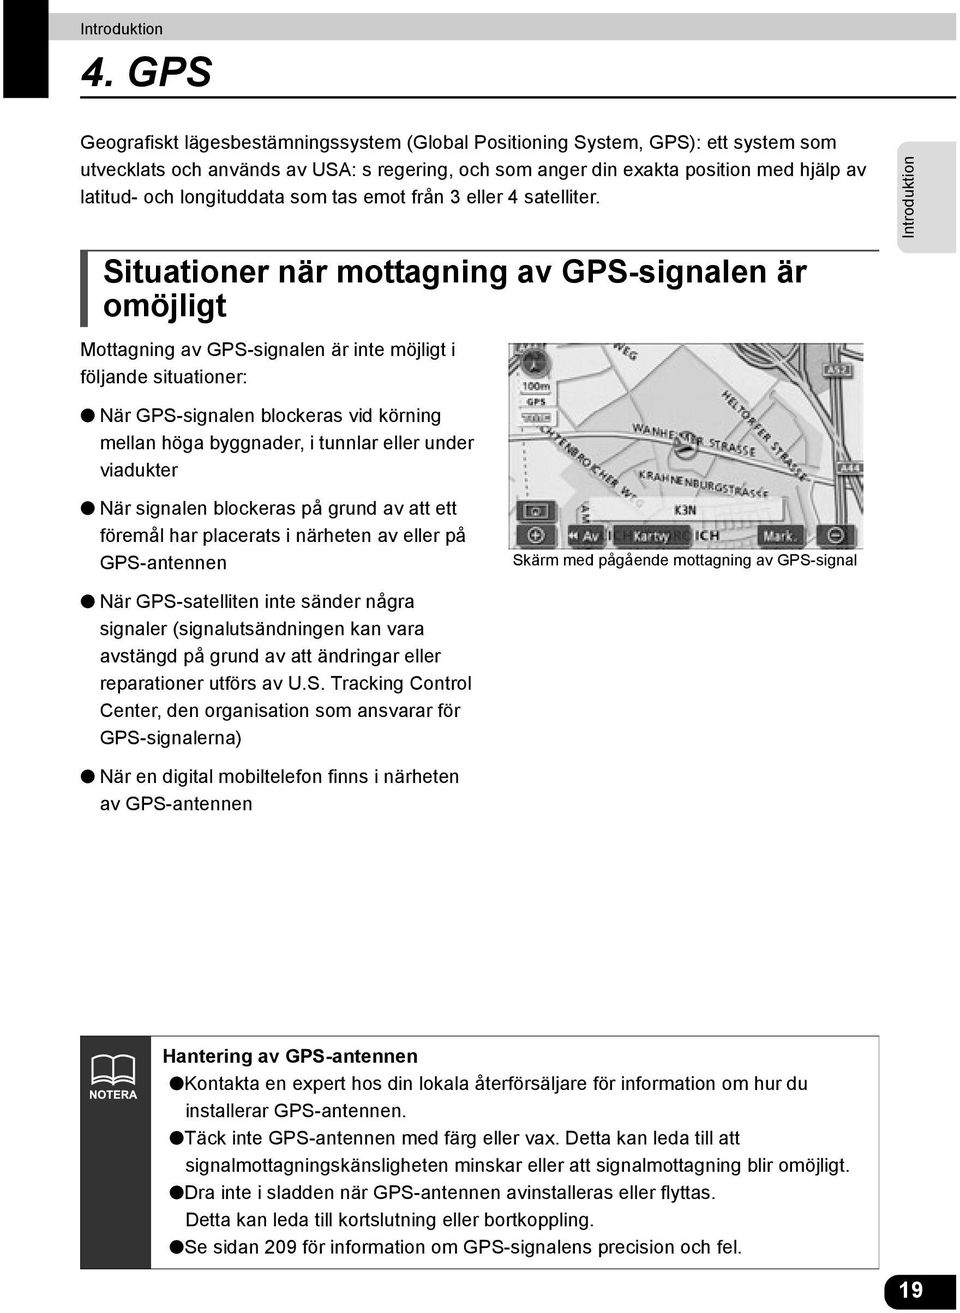 Situationer när mottagning av GPS-signalen är omöjligt Mottagning av GPS-signalen är inte möjligt i följande situationer: Introduktion När GPS-signalen blockeras vid körning mellan höga byggnader, i